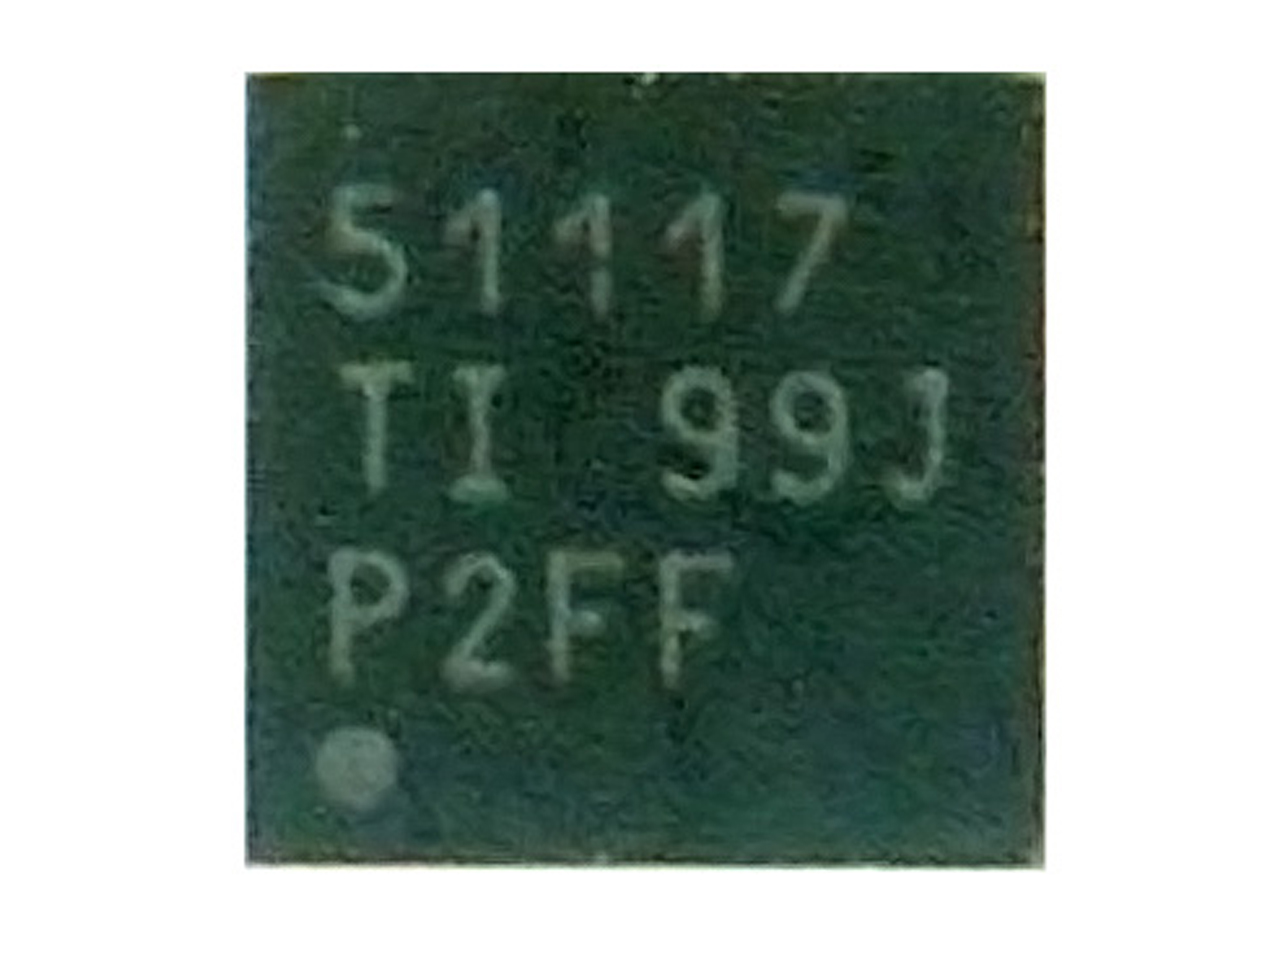 TPS51117